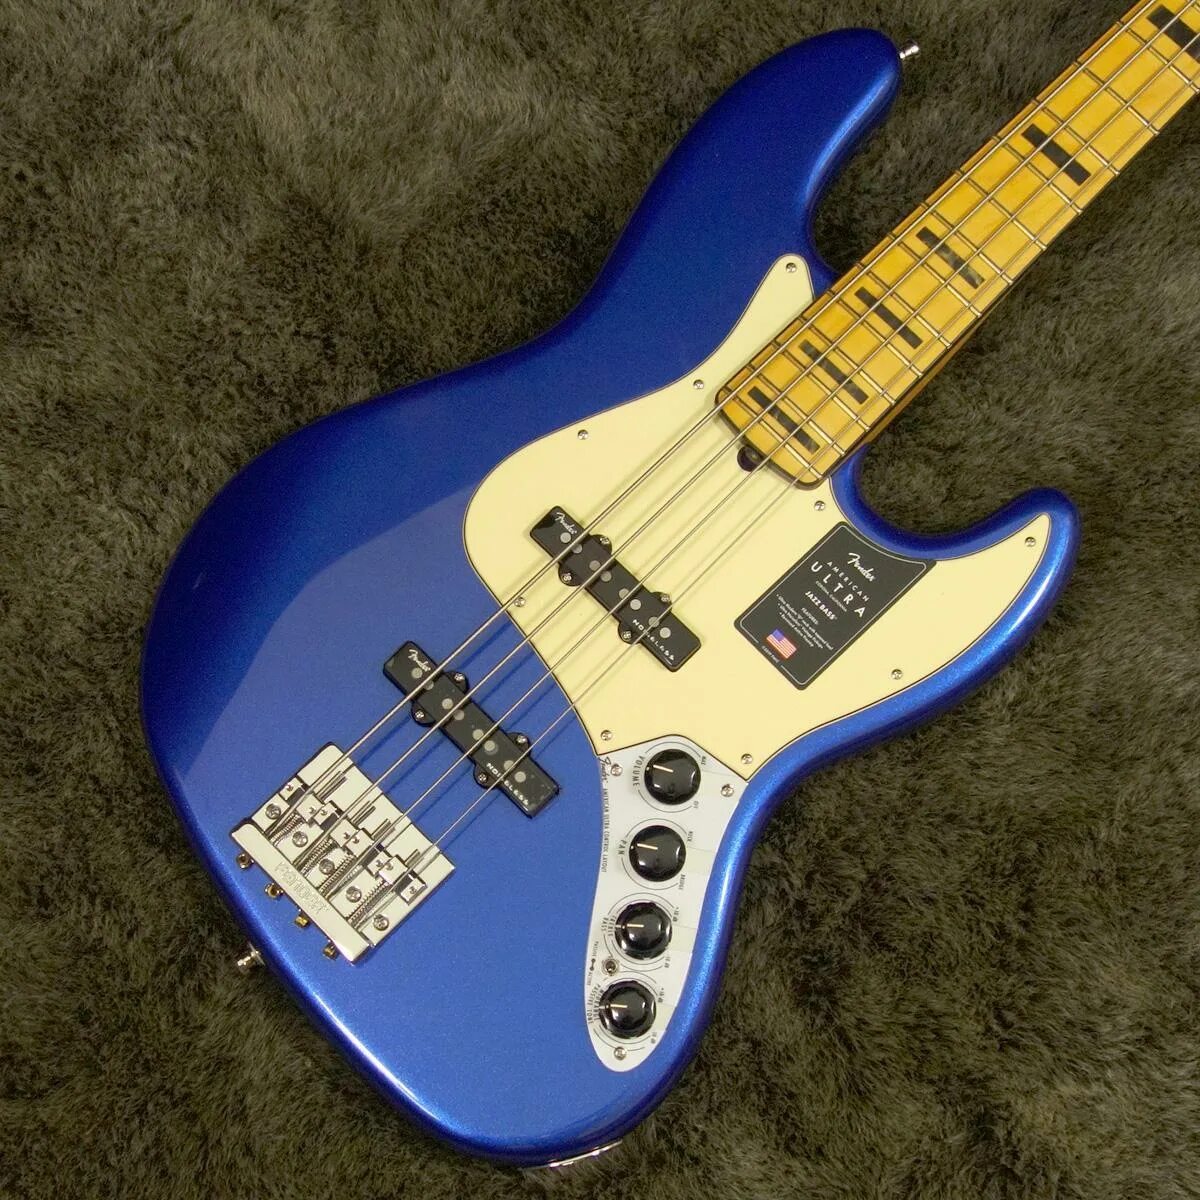 Fender Jazz Bass Blue. Fender Ultra Jazz Bass. Fender Jazz Bass синий. Fender Ultra Jazz Bass American 2019. Blue bass